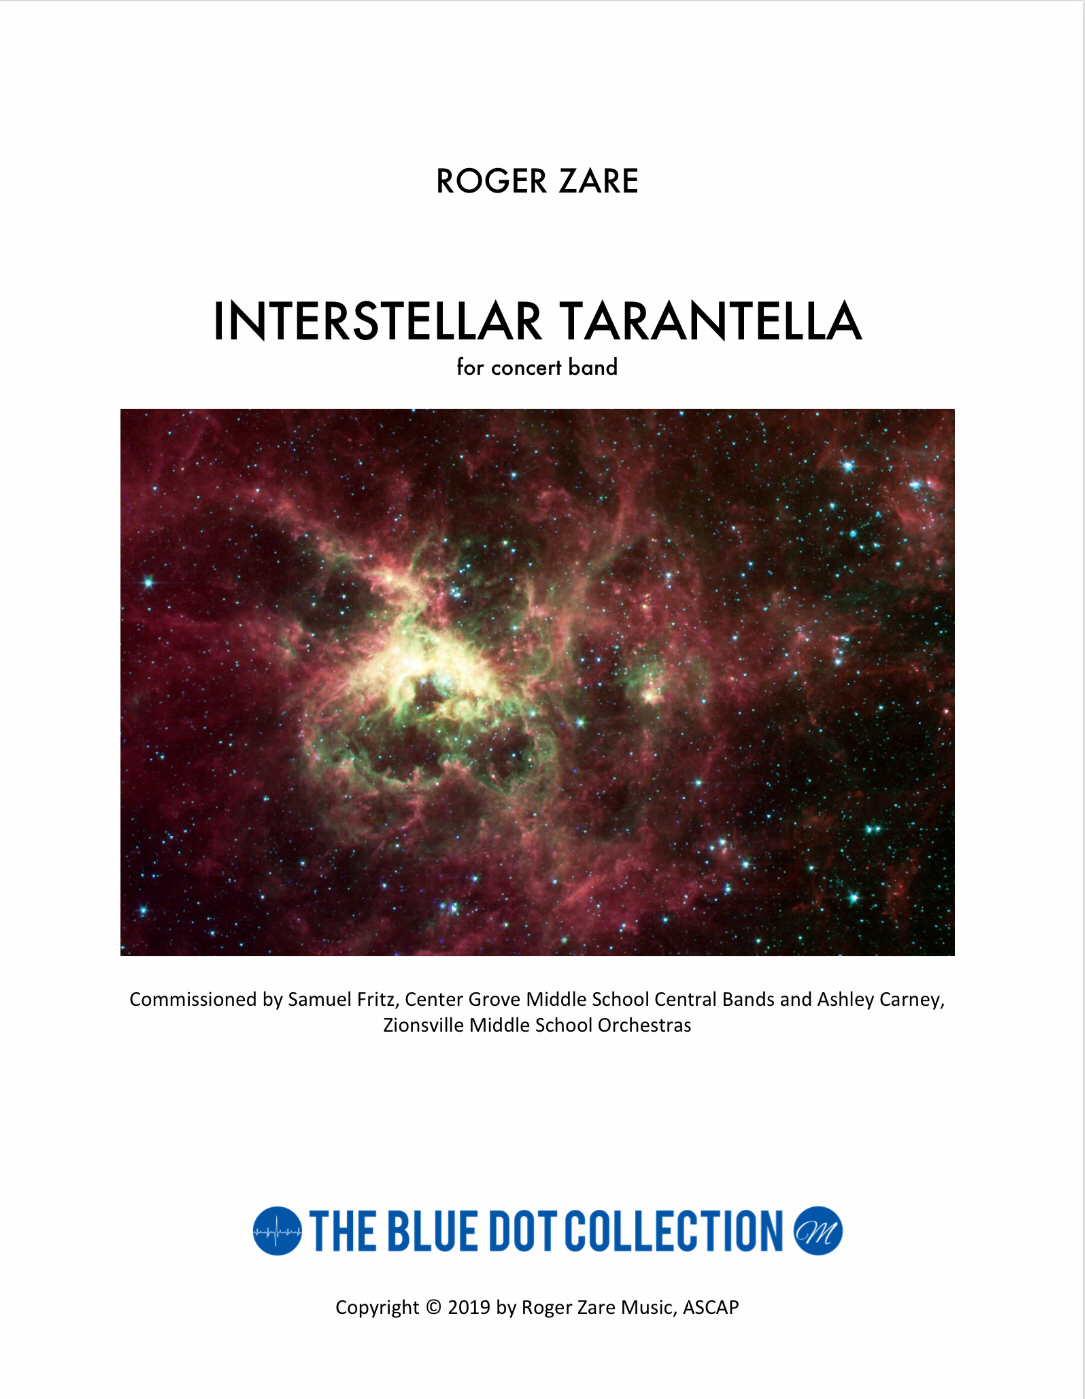 Interstellar Tarantella   by Roger Zare